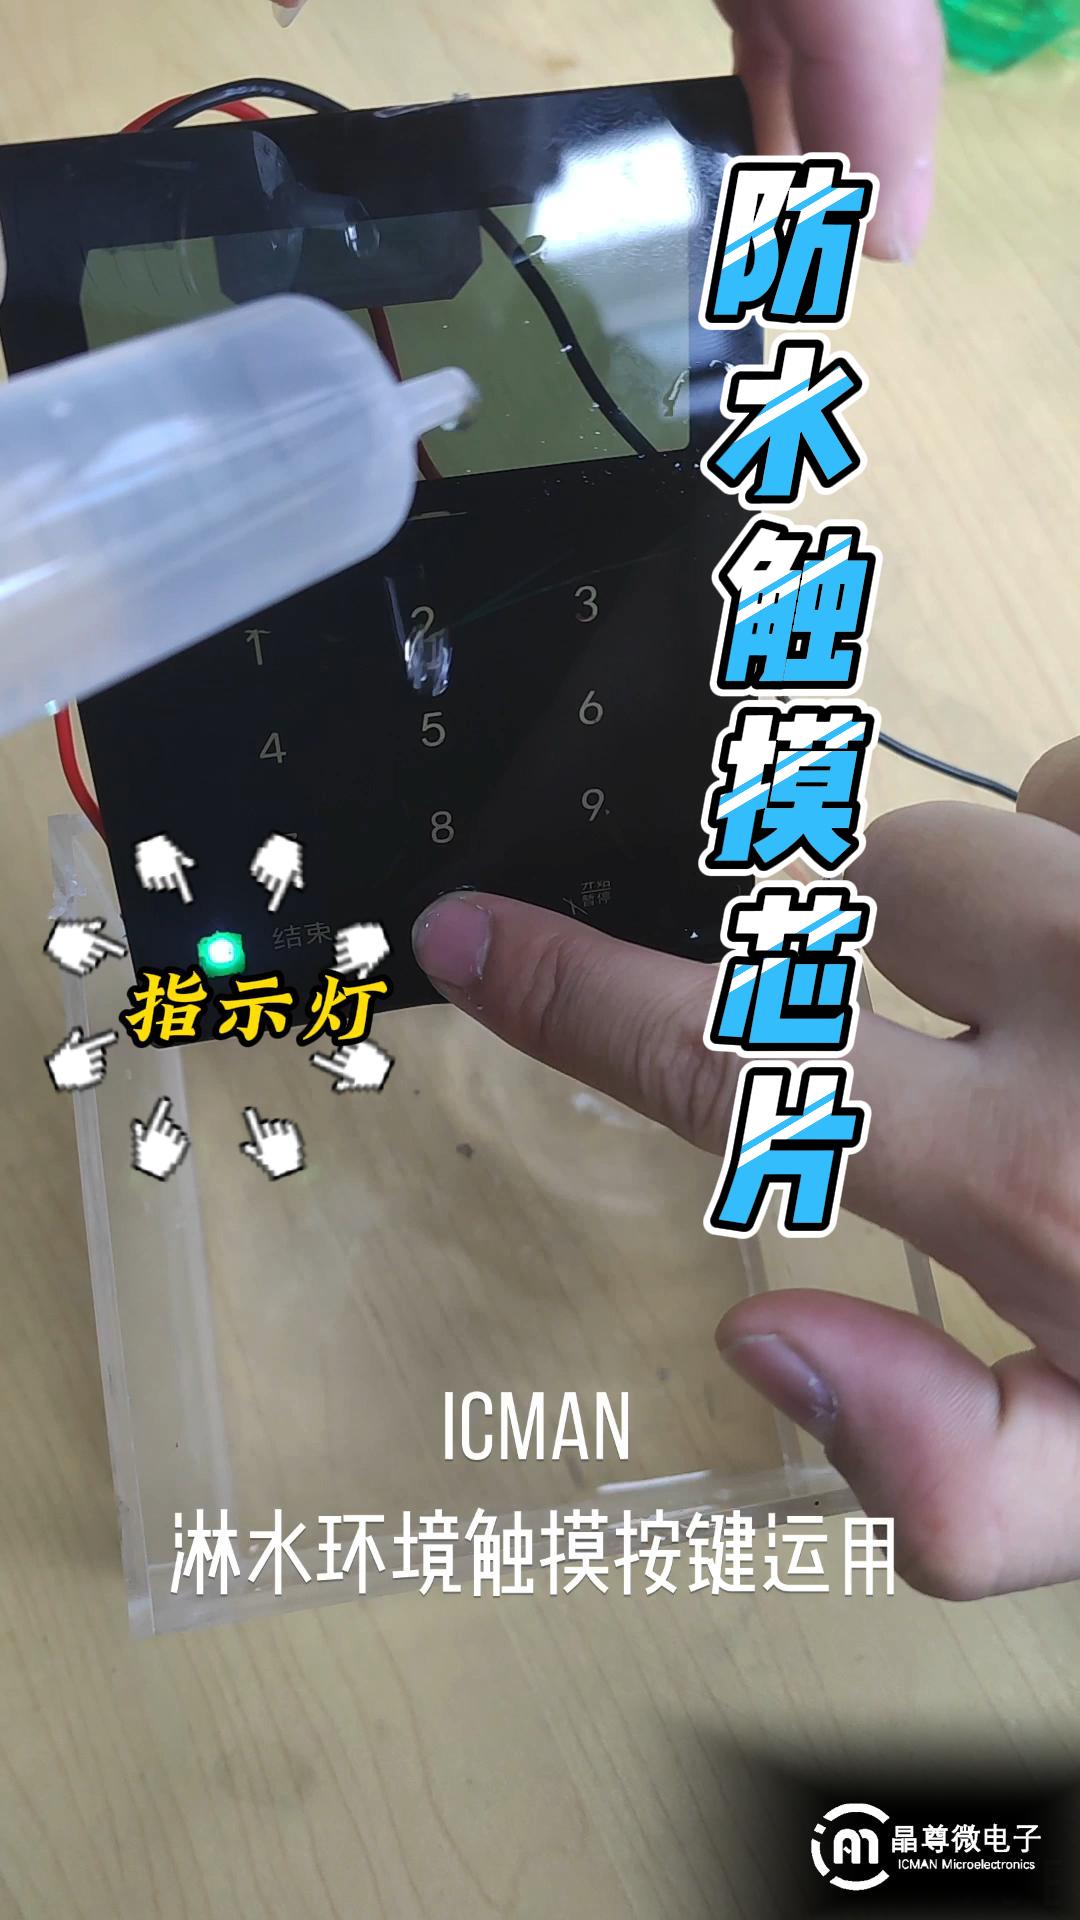 ICMAN觸摸芯片淋水環境下應用演示# 觸摸芯片#電路知識 